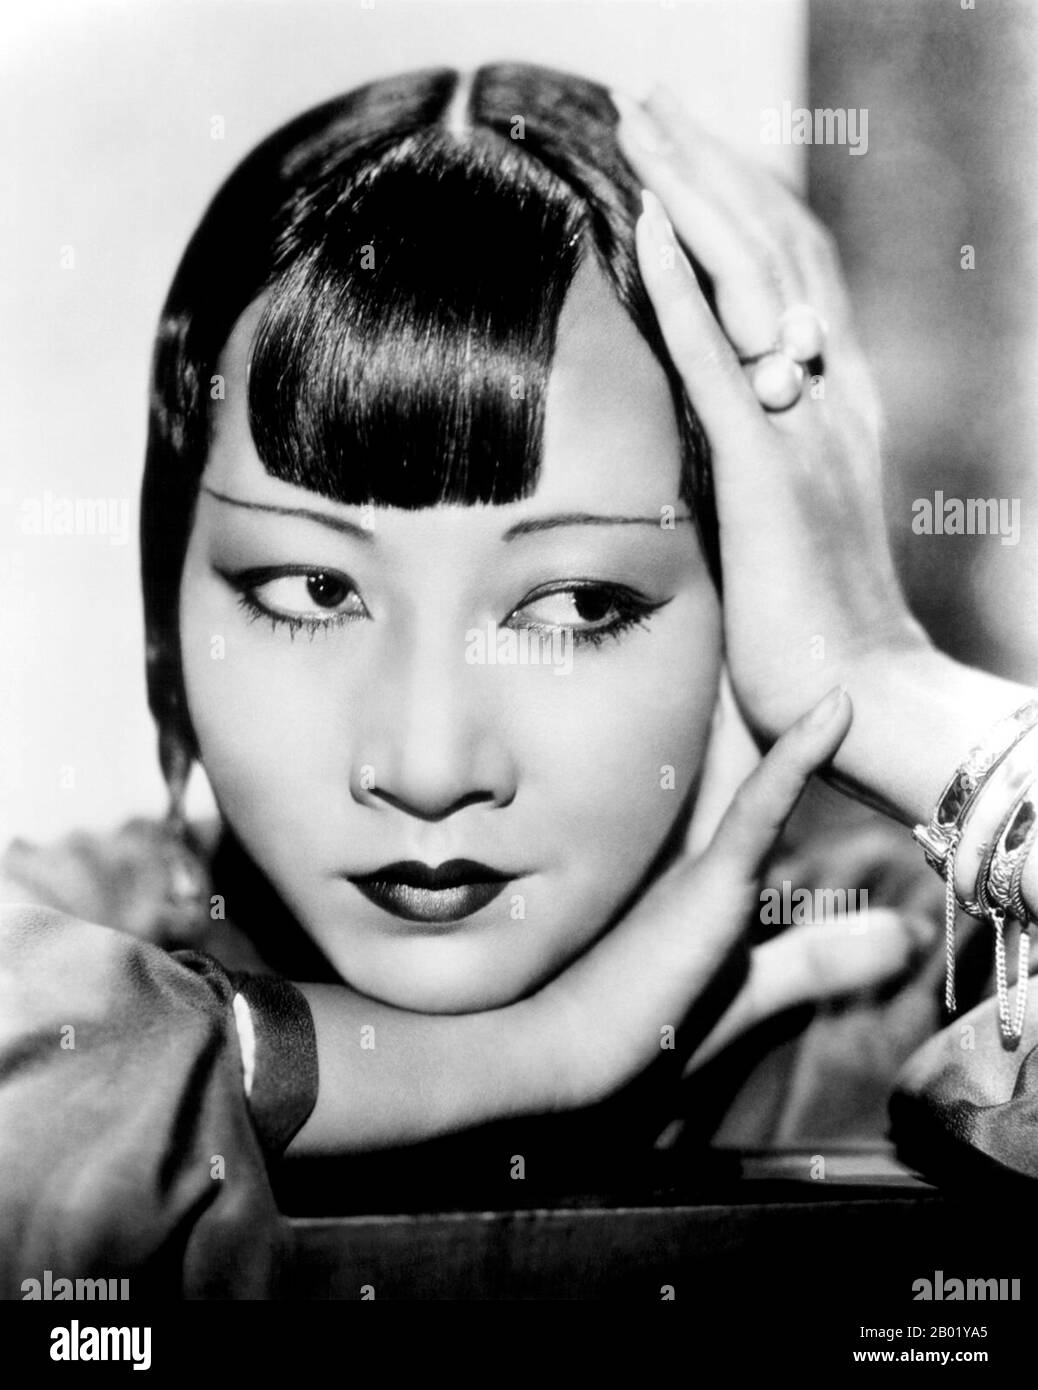 Anna May Wong (3 de enero de 1905 – 3 de febrero de 1961) fue una actriz estadounidense, la primera estrella de cine chino-americana, y la primera asiática-americana en convertirse en una estrella internacional. Su larga y variada carrera abarcó tanto películas silenciosas como sonoras, televisión, escenario y radio. Nacido cerca del barrio de Chinatown de los Ángeles a padres de segunda generación chino-americanos, Wong se infatuó con las películas y comenzó a actuar en películas a una edad temprana. Durante la era del cine silencioso, actuó en el Toll of the sea (1922), una de las primeras películas hechas en color y El ladrón de Bagda de Douglas Fairbanks Foto de stock